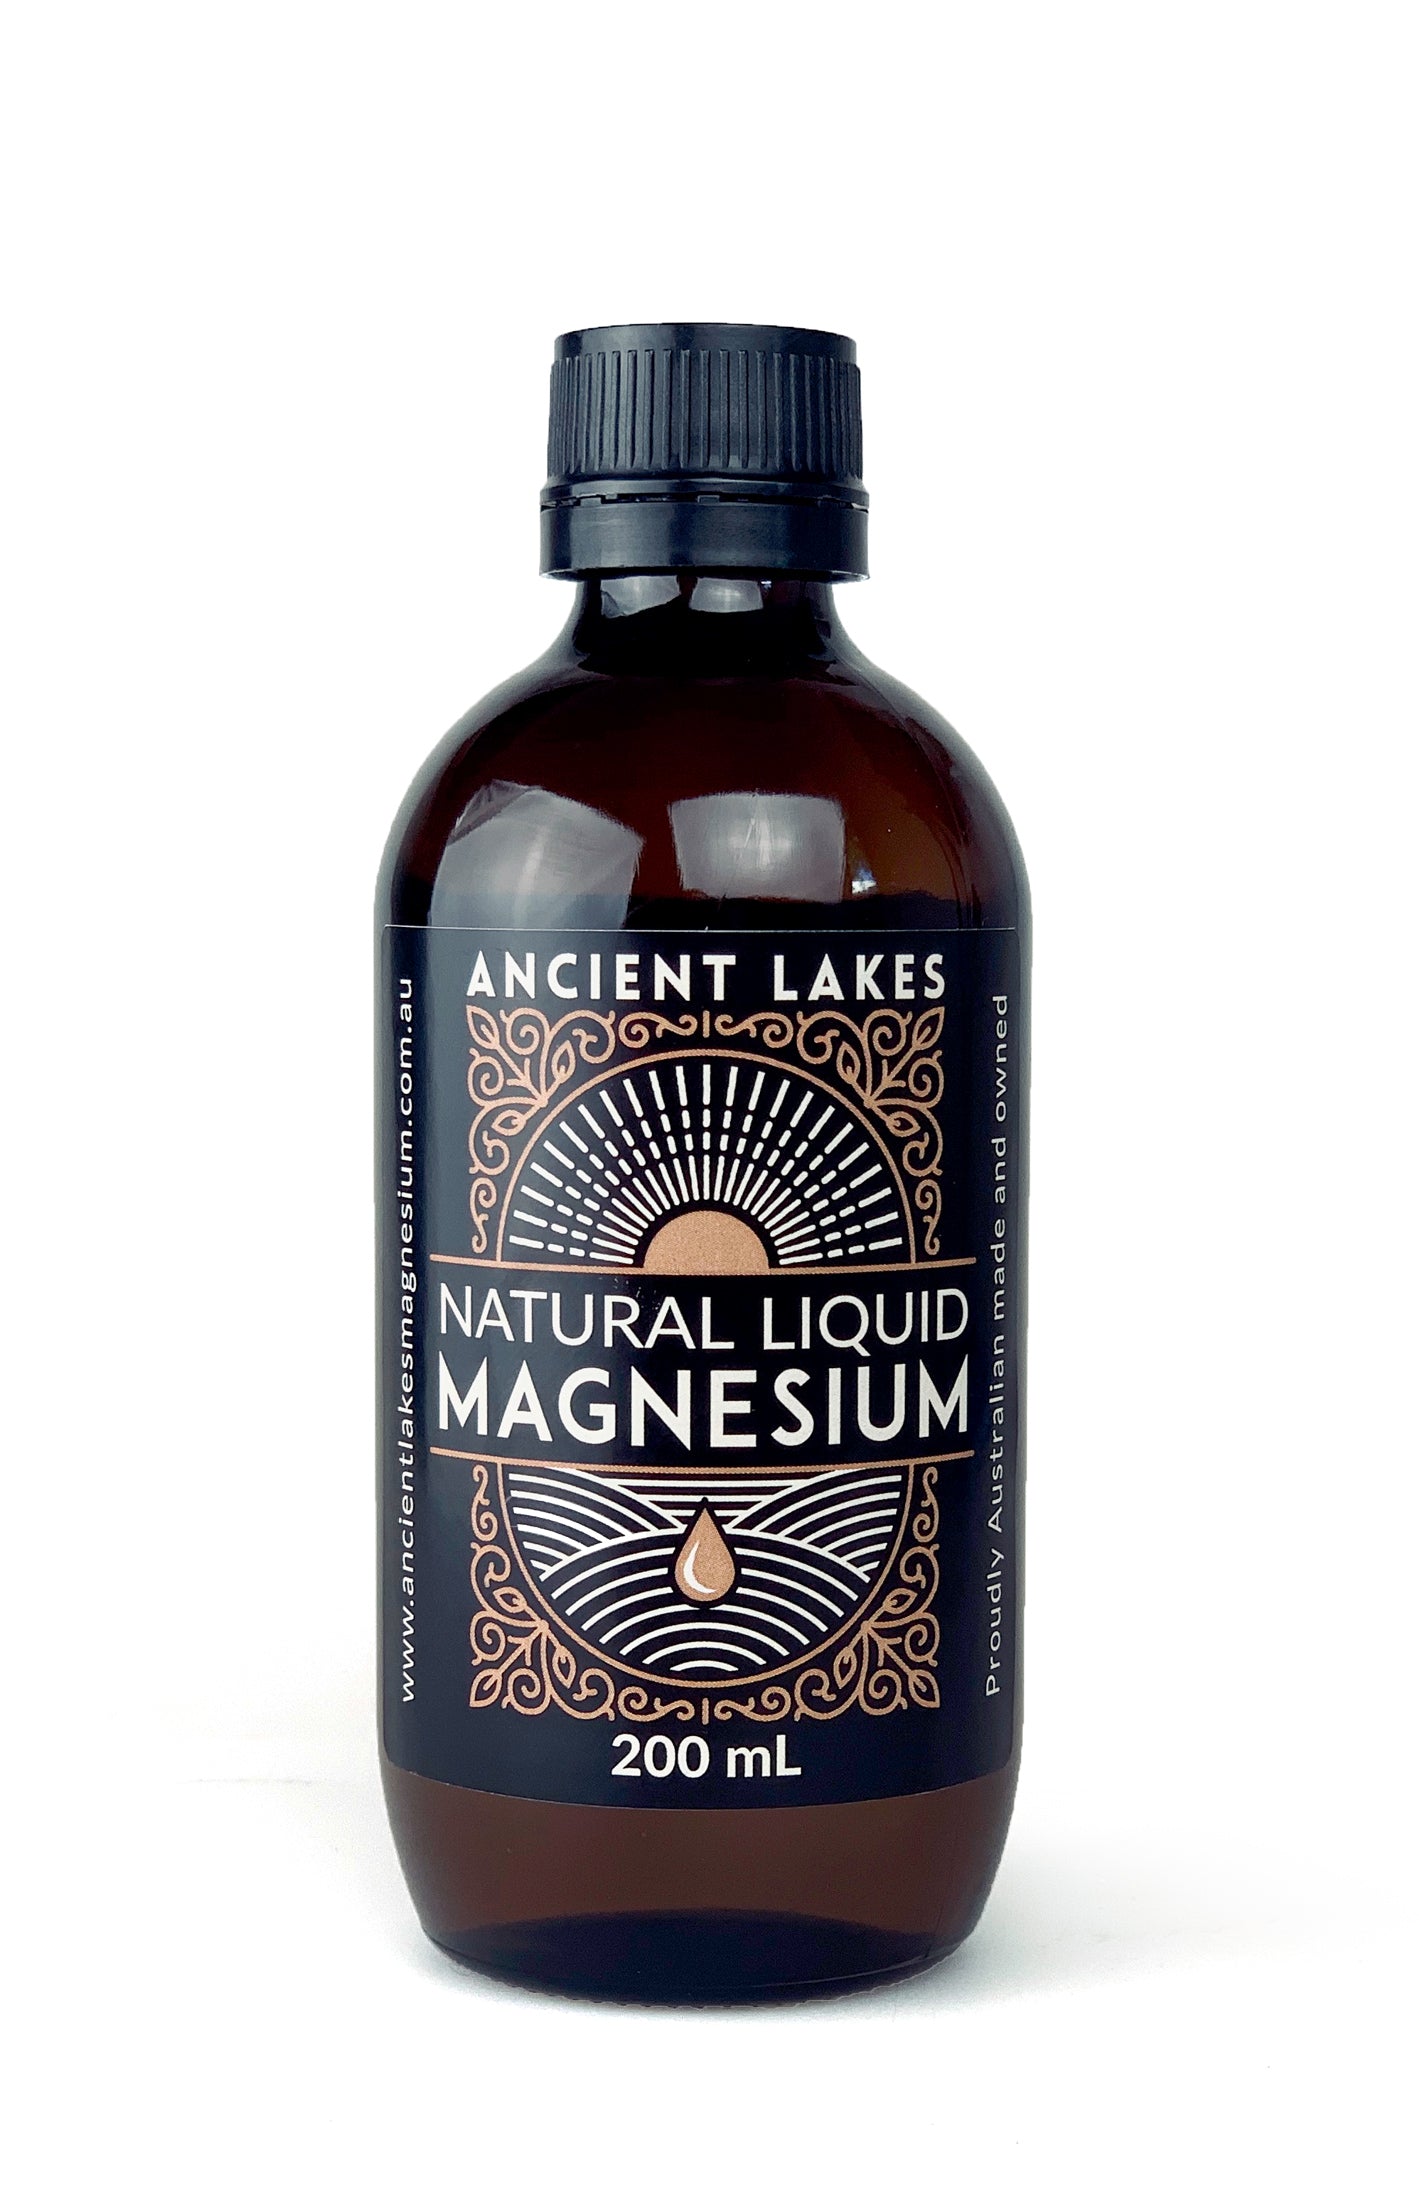 Natural Liquid Magnesium